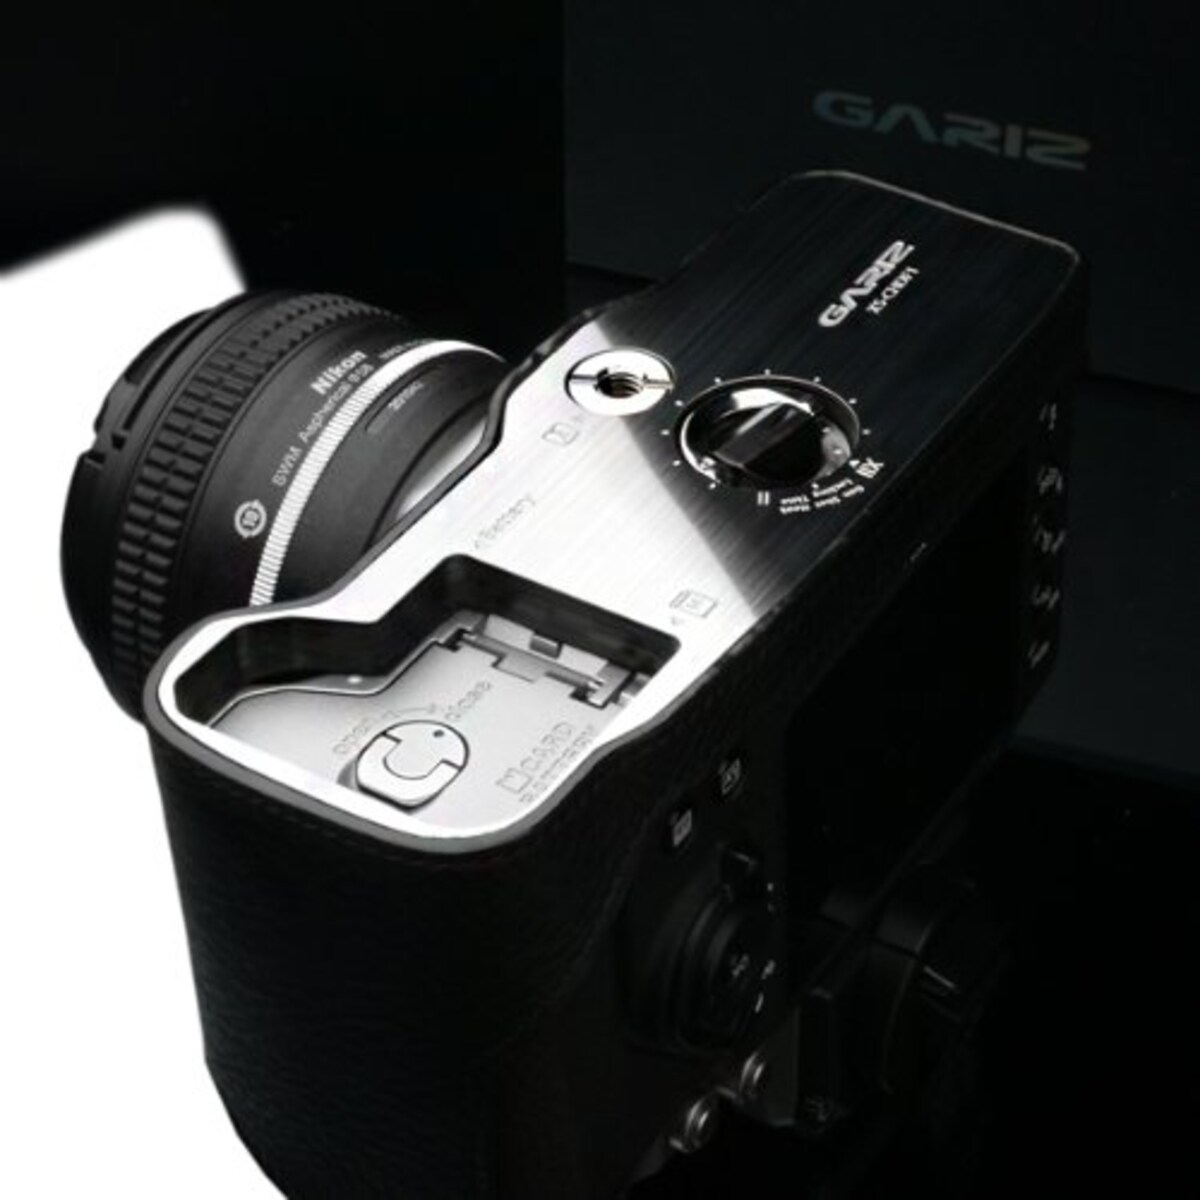  GARIZ Nikon Df用 本革カメラケース Gun Shot Ring付 XS-CHDFBK ブラック画像7 